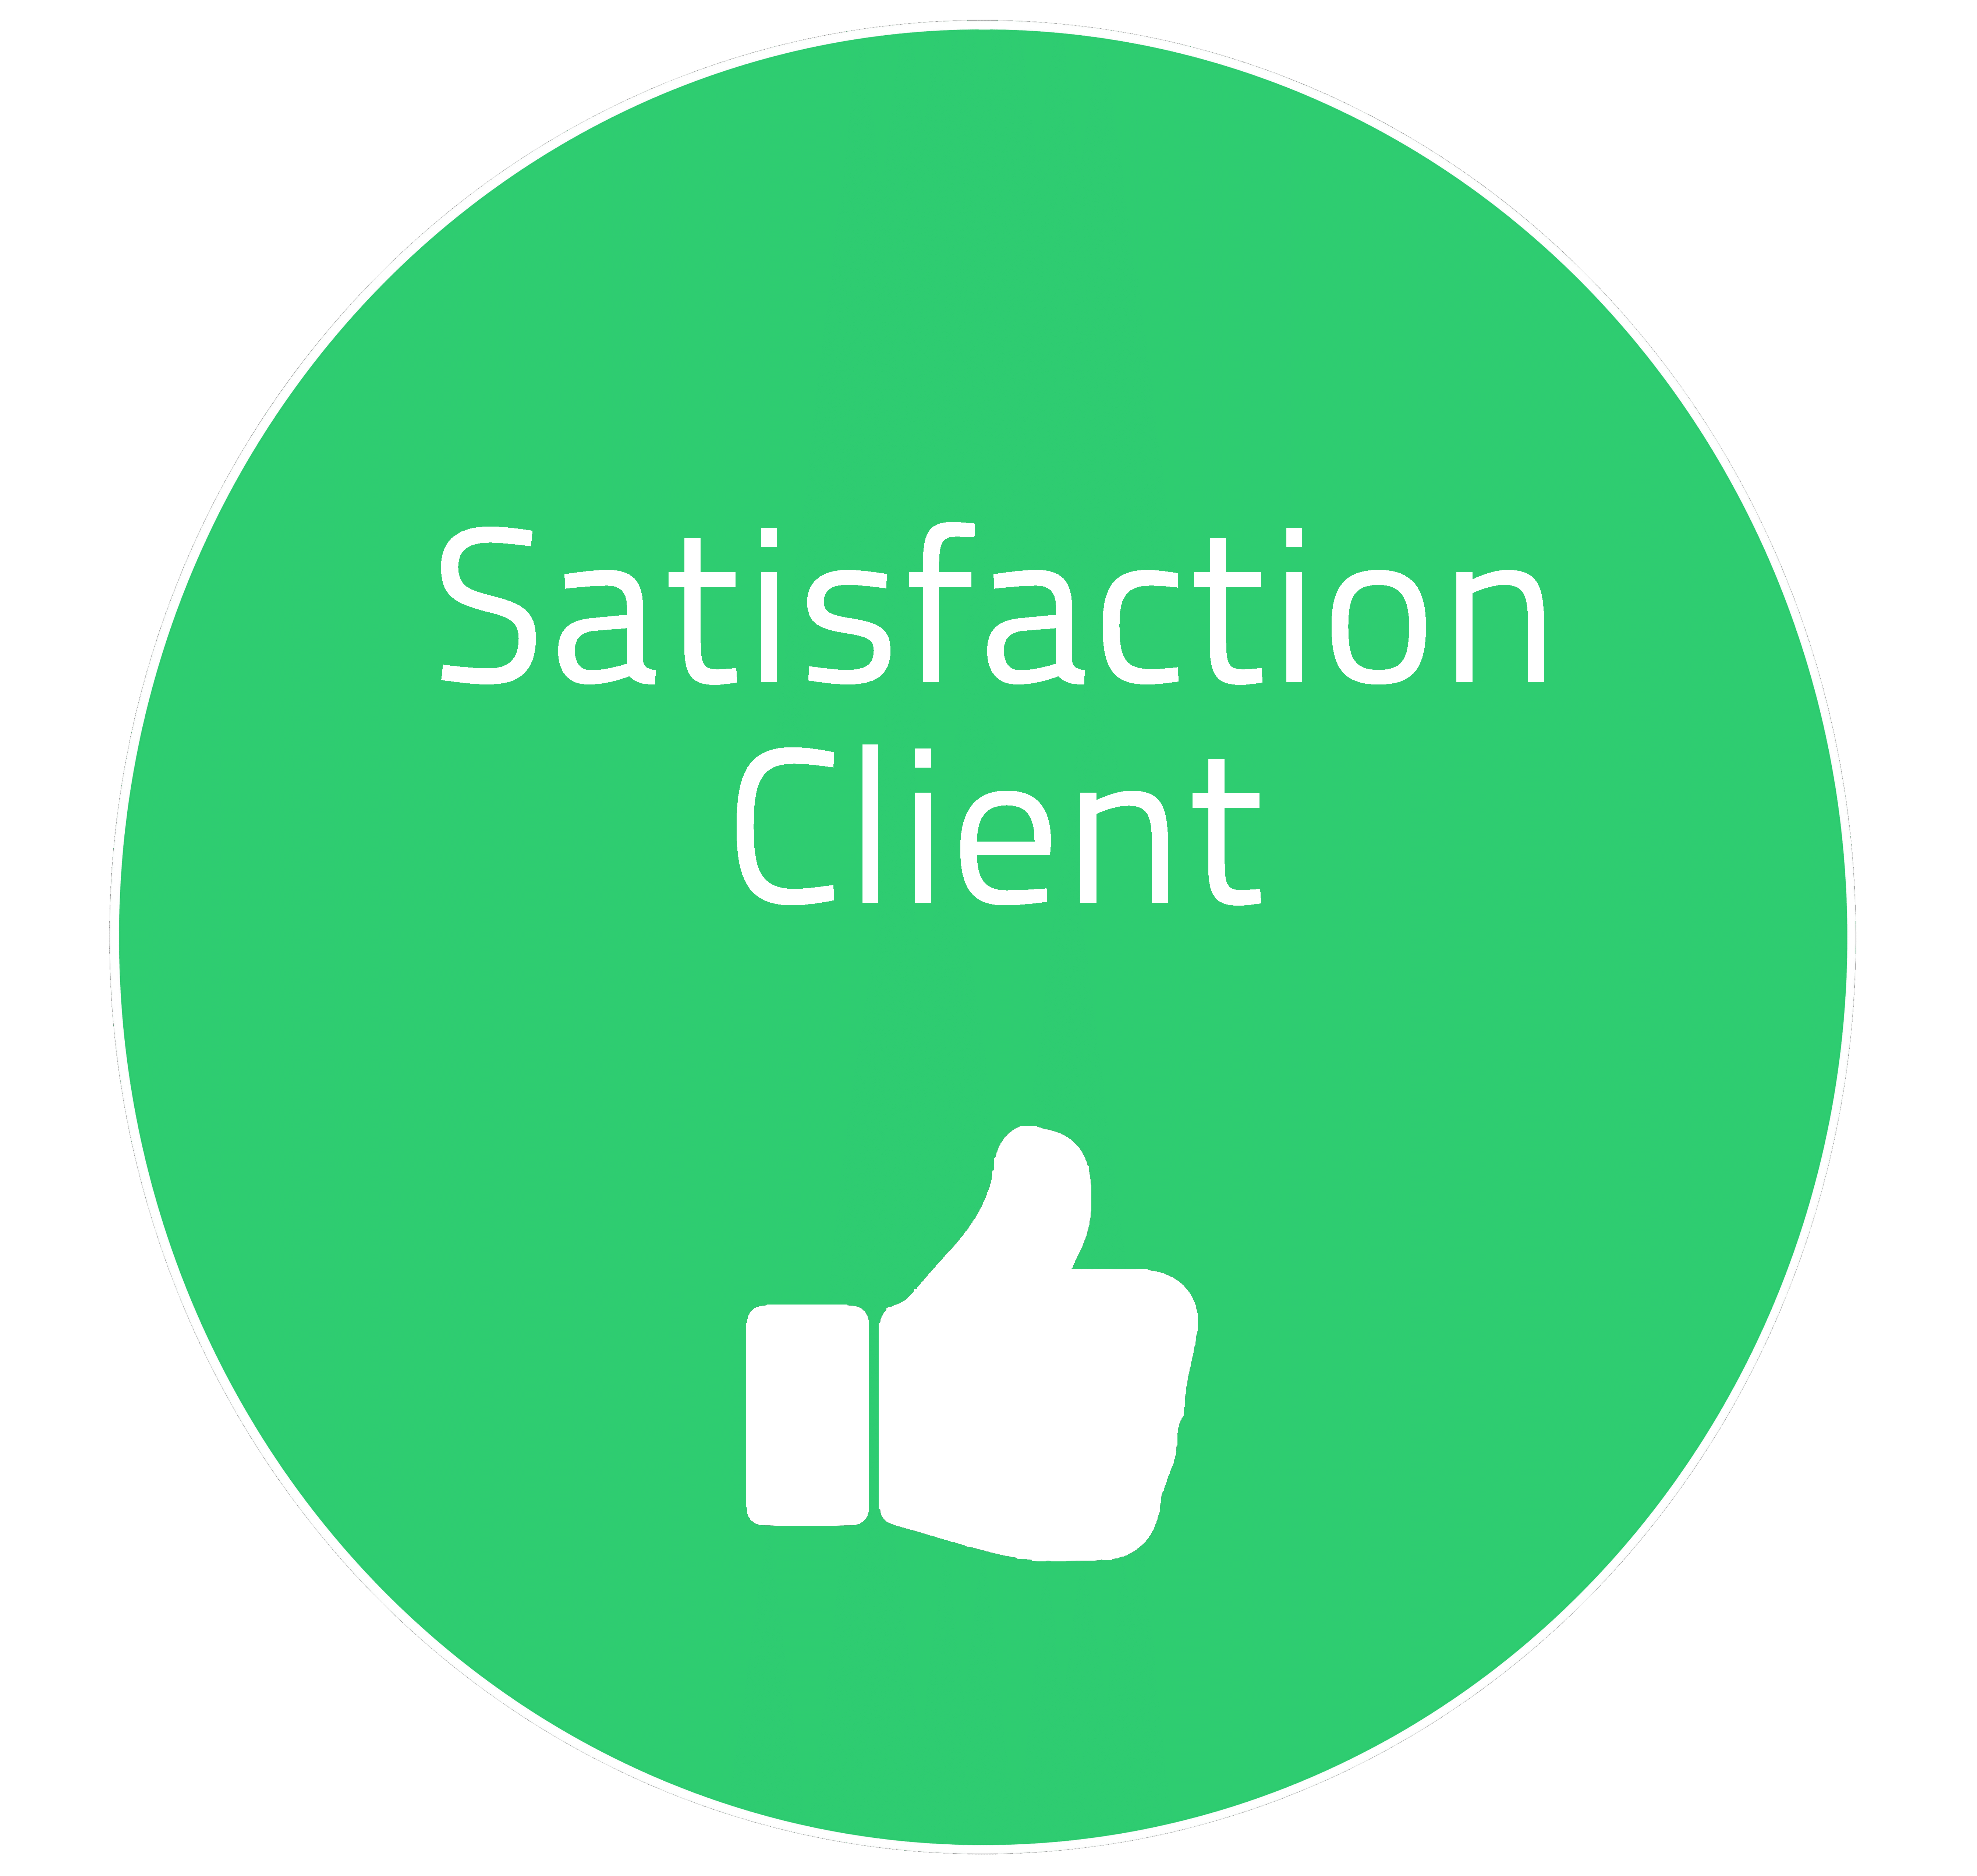 La satisfaction client est notre priorité